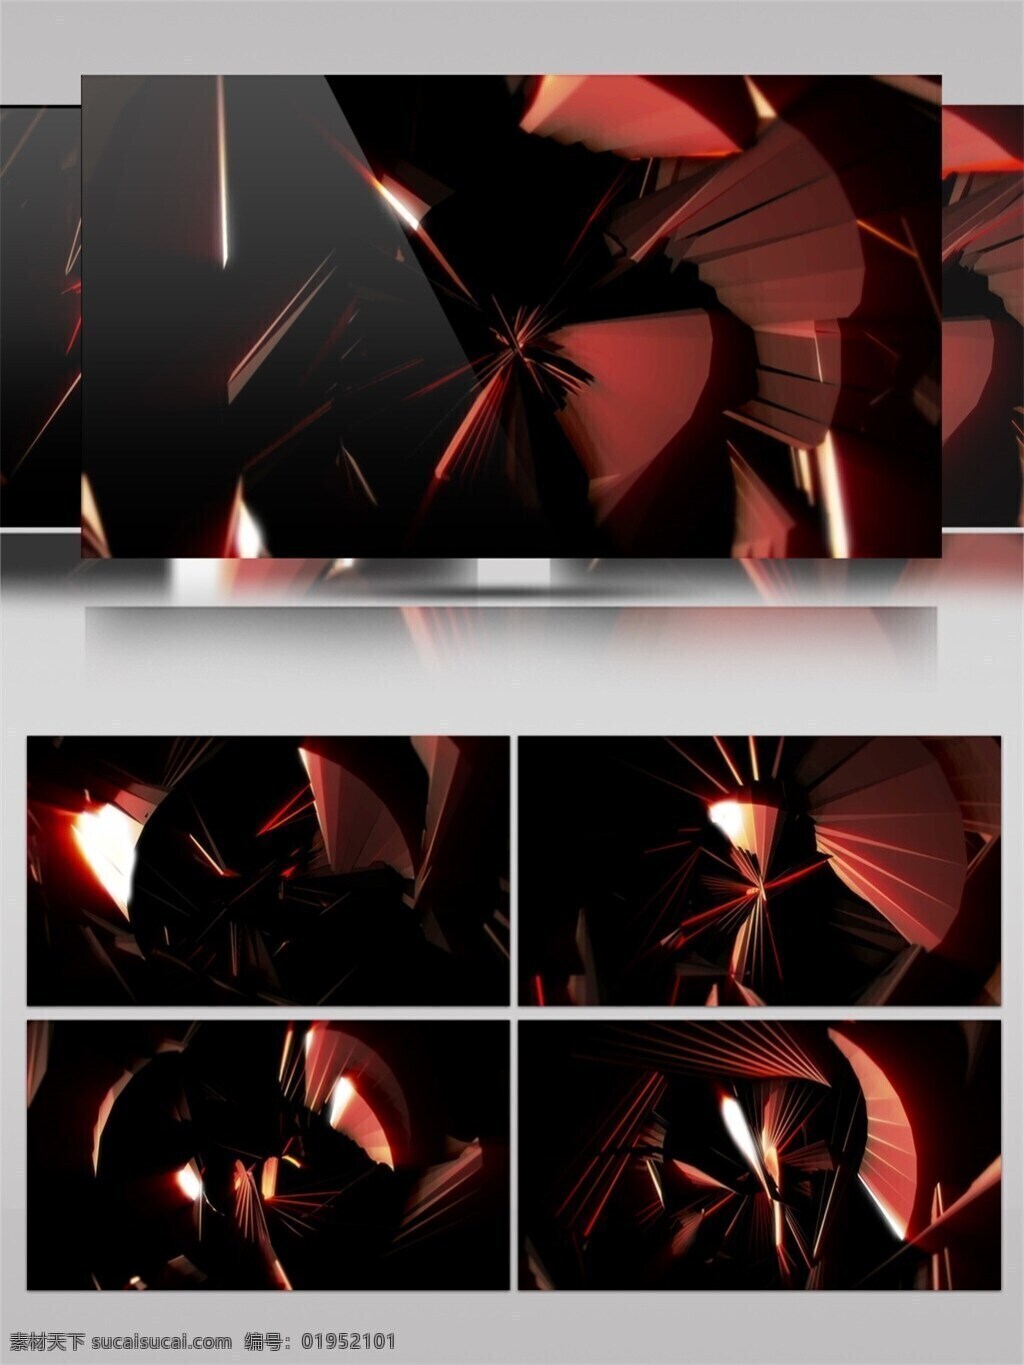 特效视频素材 暗 红光 格 动态 视频 暗色光格 绚丽暗光 华丽暗光 生活 实用 背景